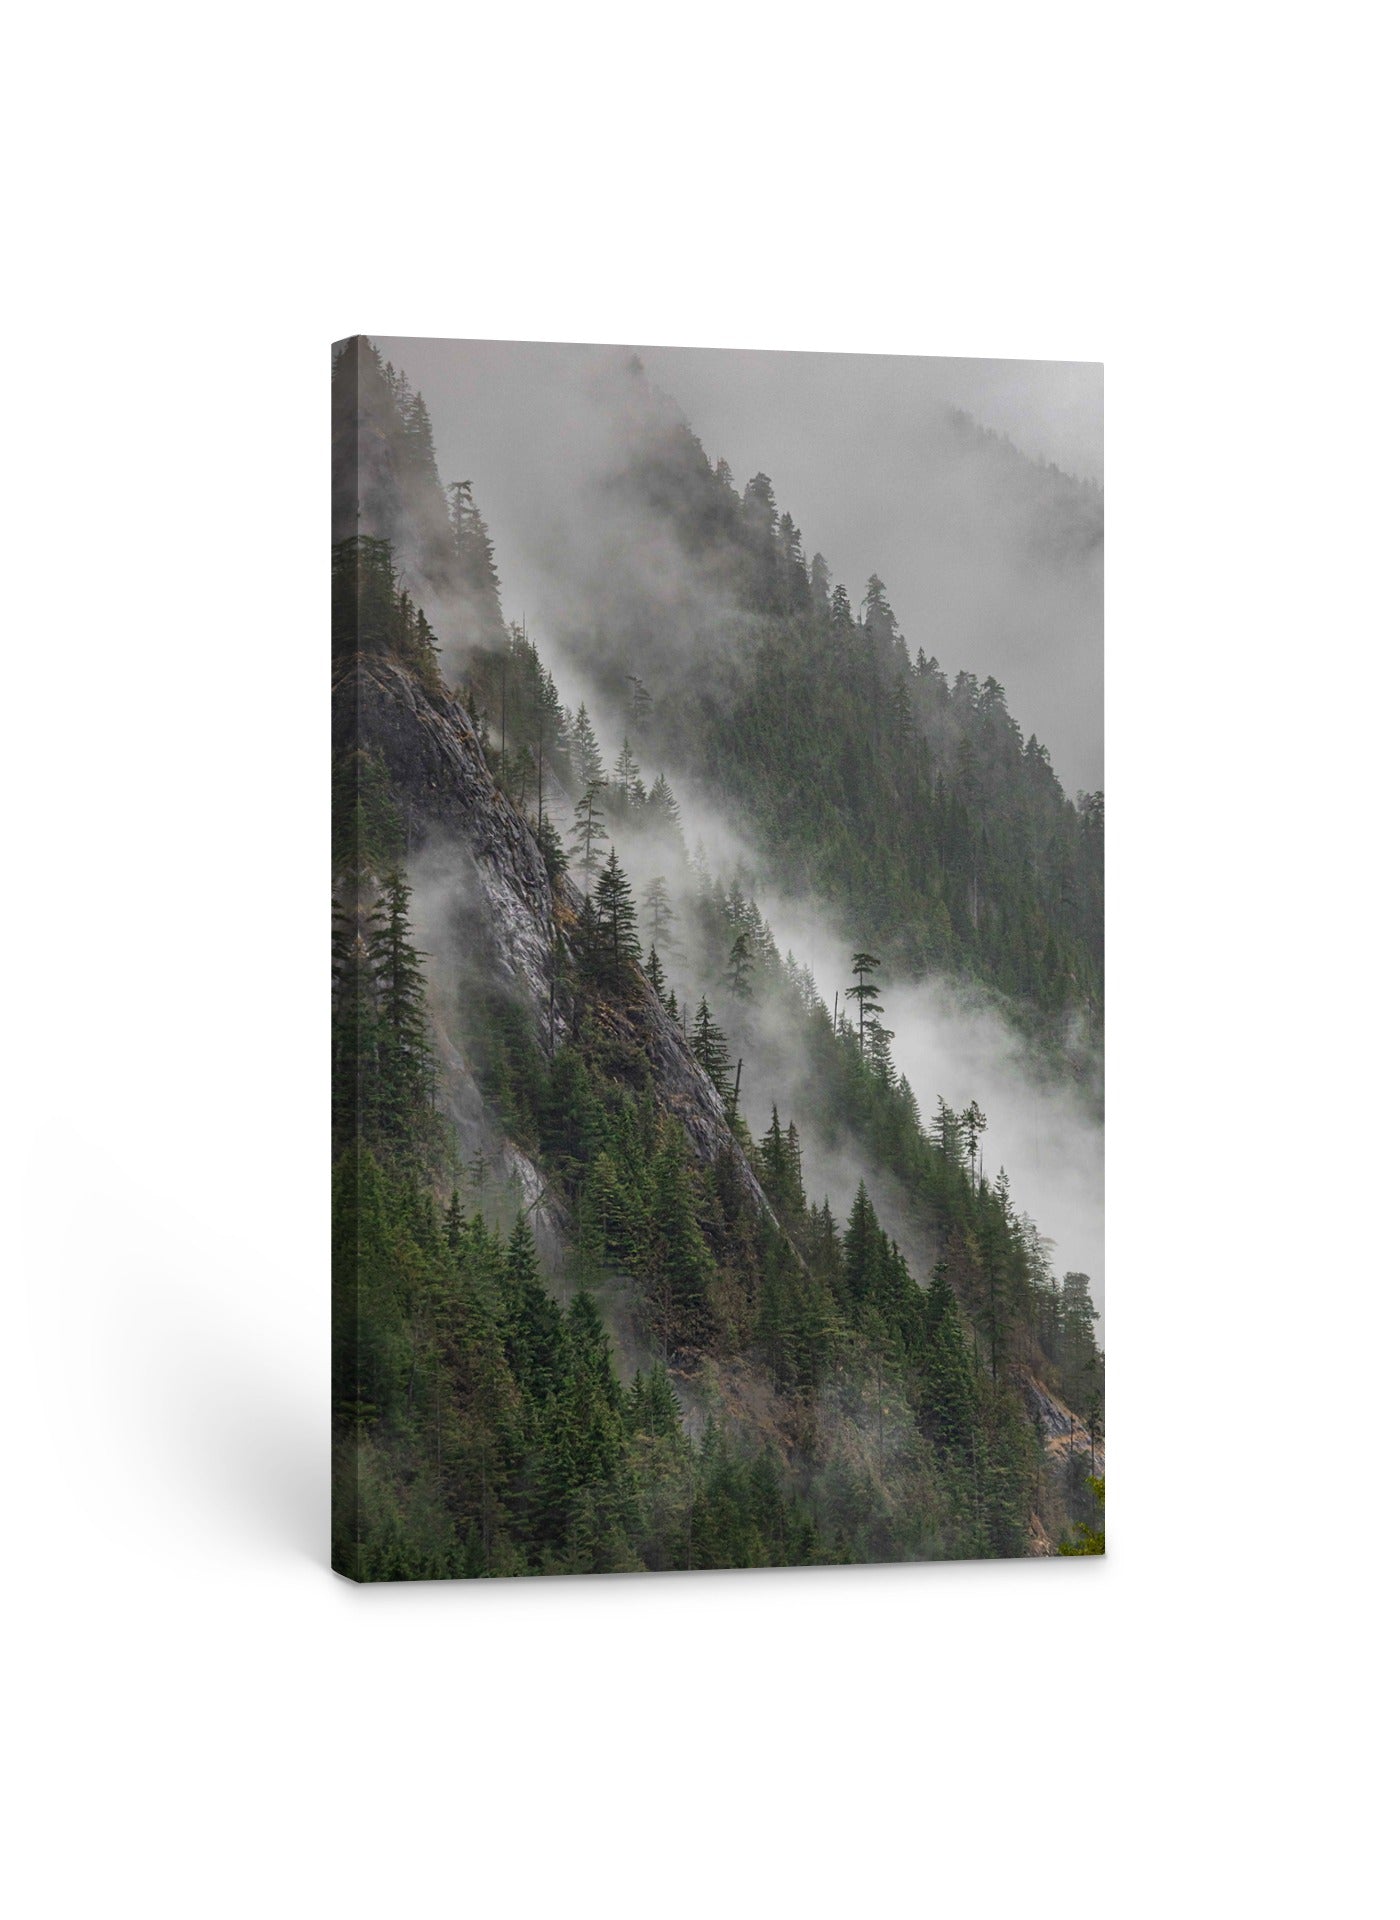 Mist on the Mountain 40x60"